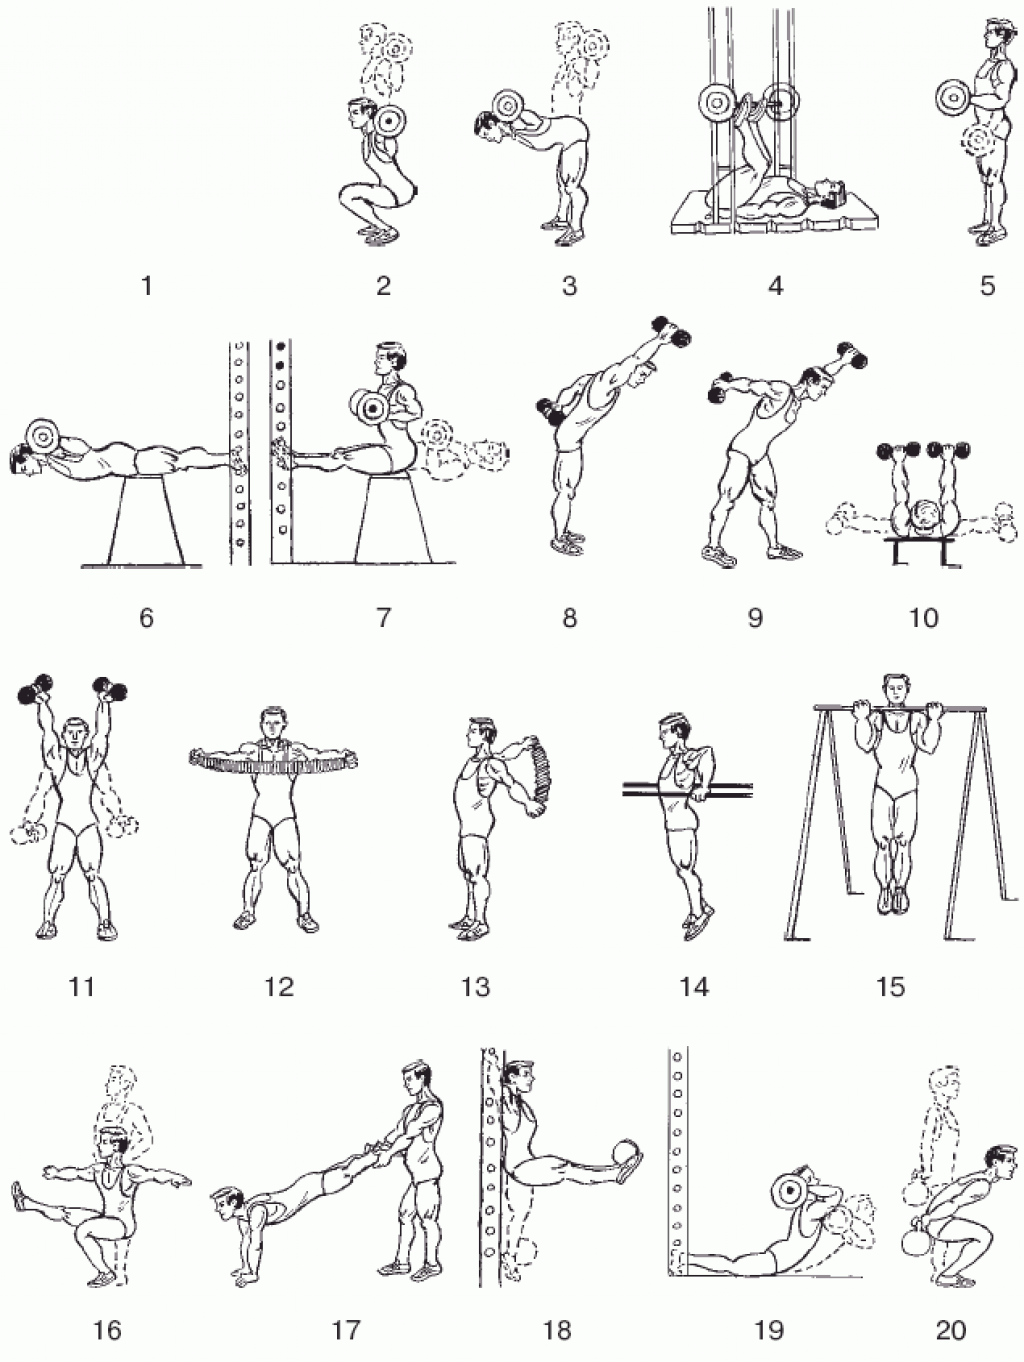 Упр с гантелями. Комплекс упражнений с гантелями (10-12 упражнений). Комплекс силовых упражнений с гантелями. Гантельная гимнастика комплекс 1/ для начинающих. Упражнения с гантелями на разные группы мышц.